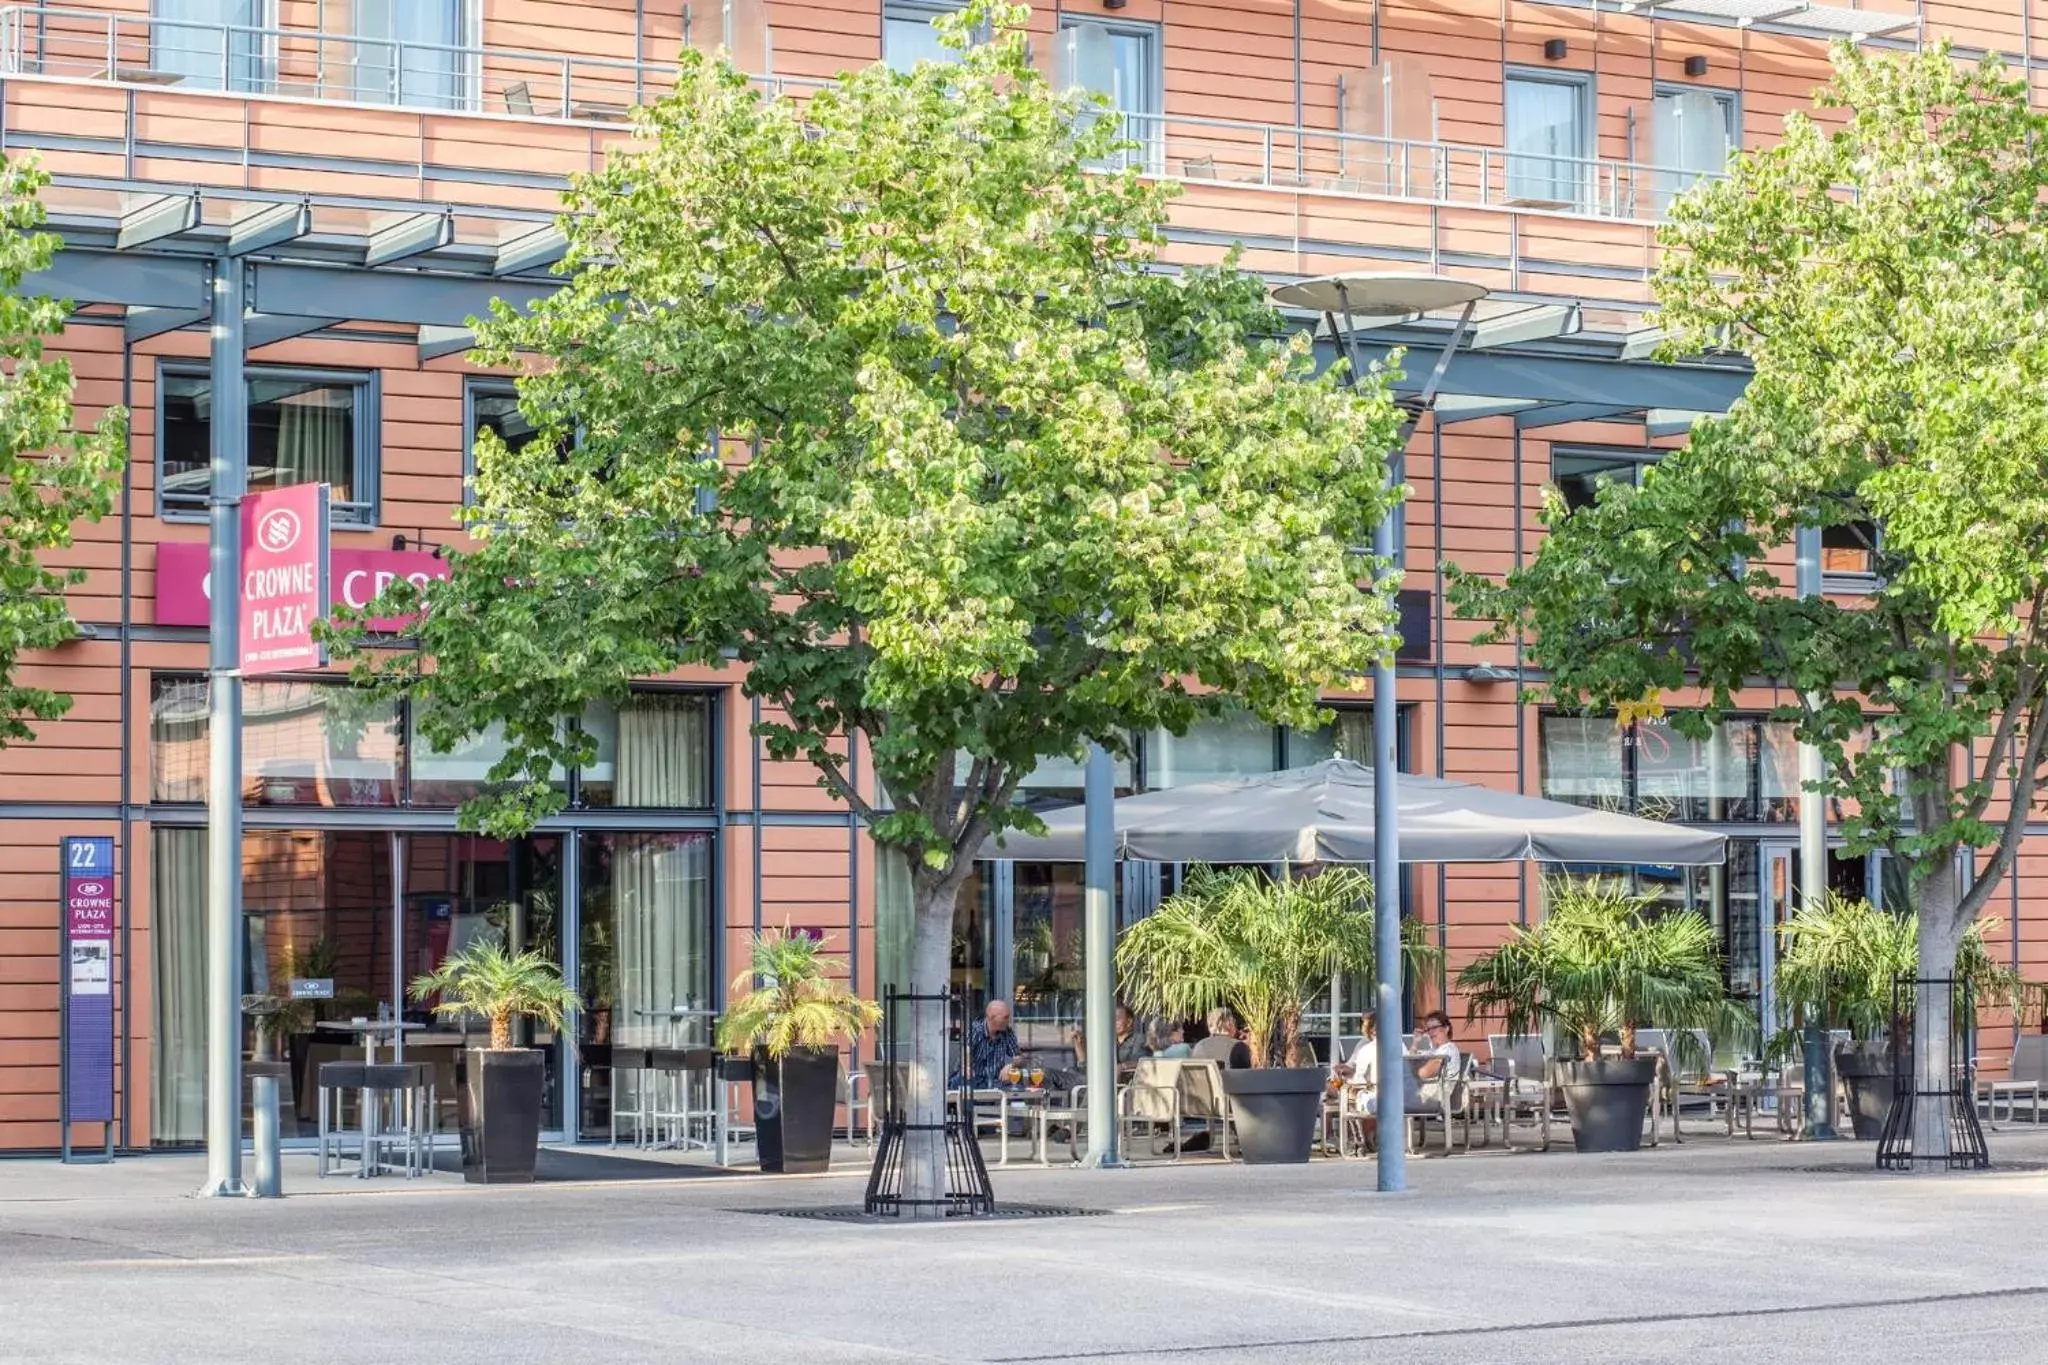 Restaurant/places to eat, Property Building in Crowne Plaza Lyon Parc de la Tête d'Or